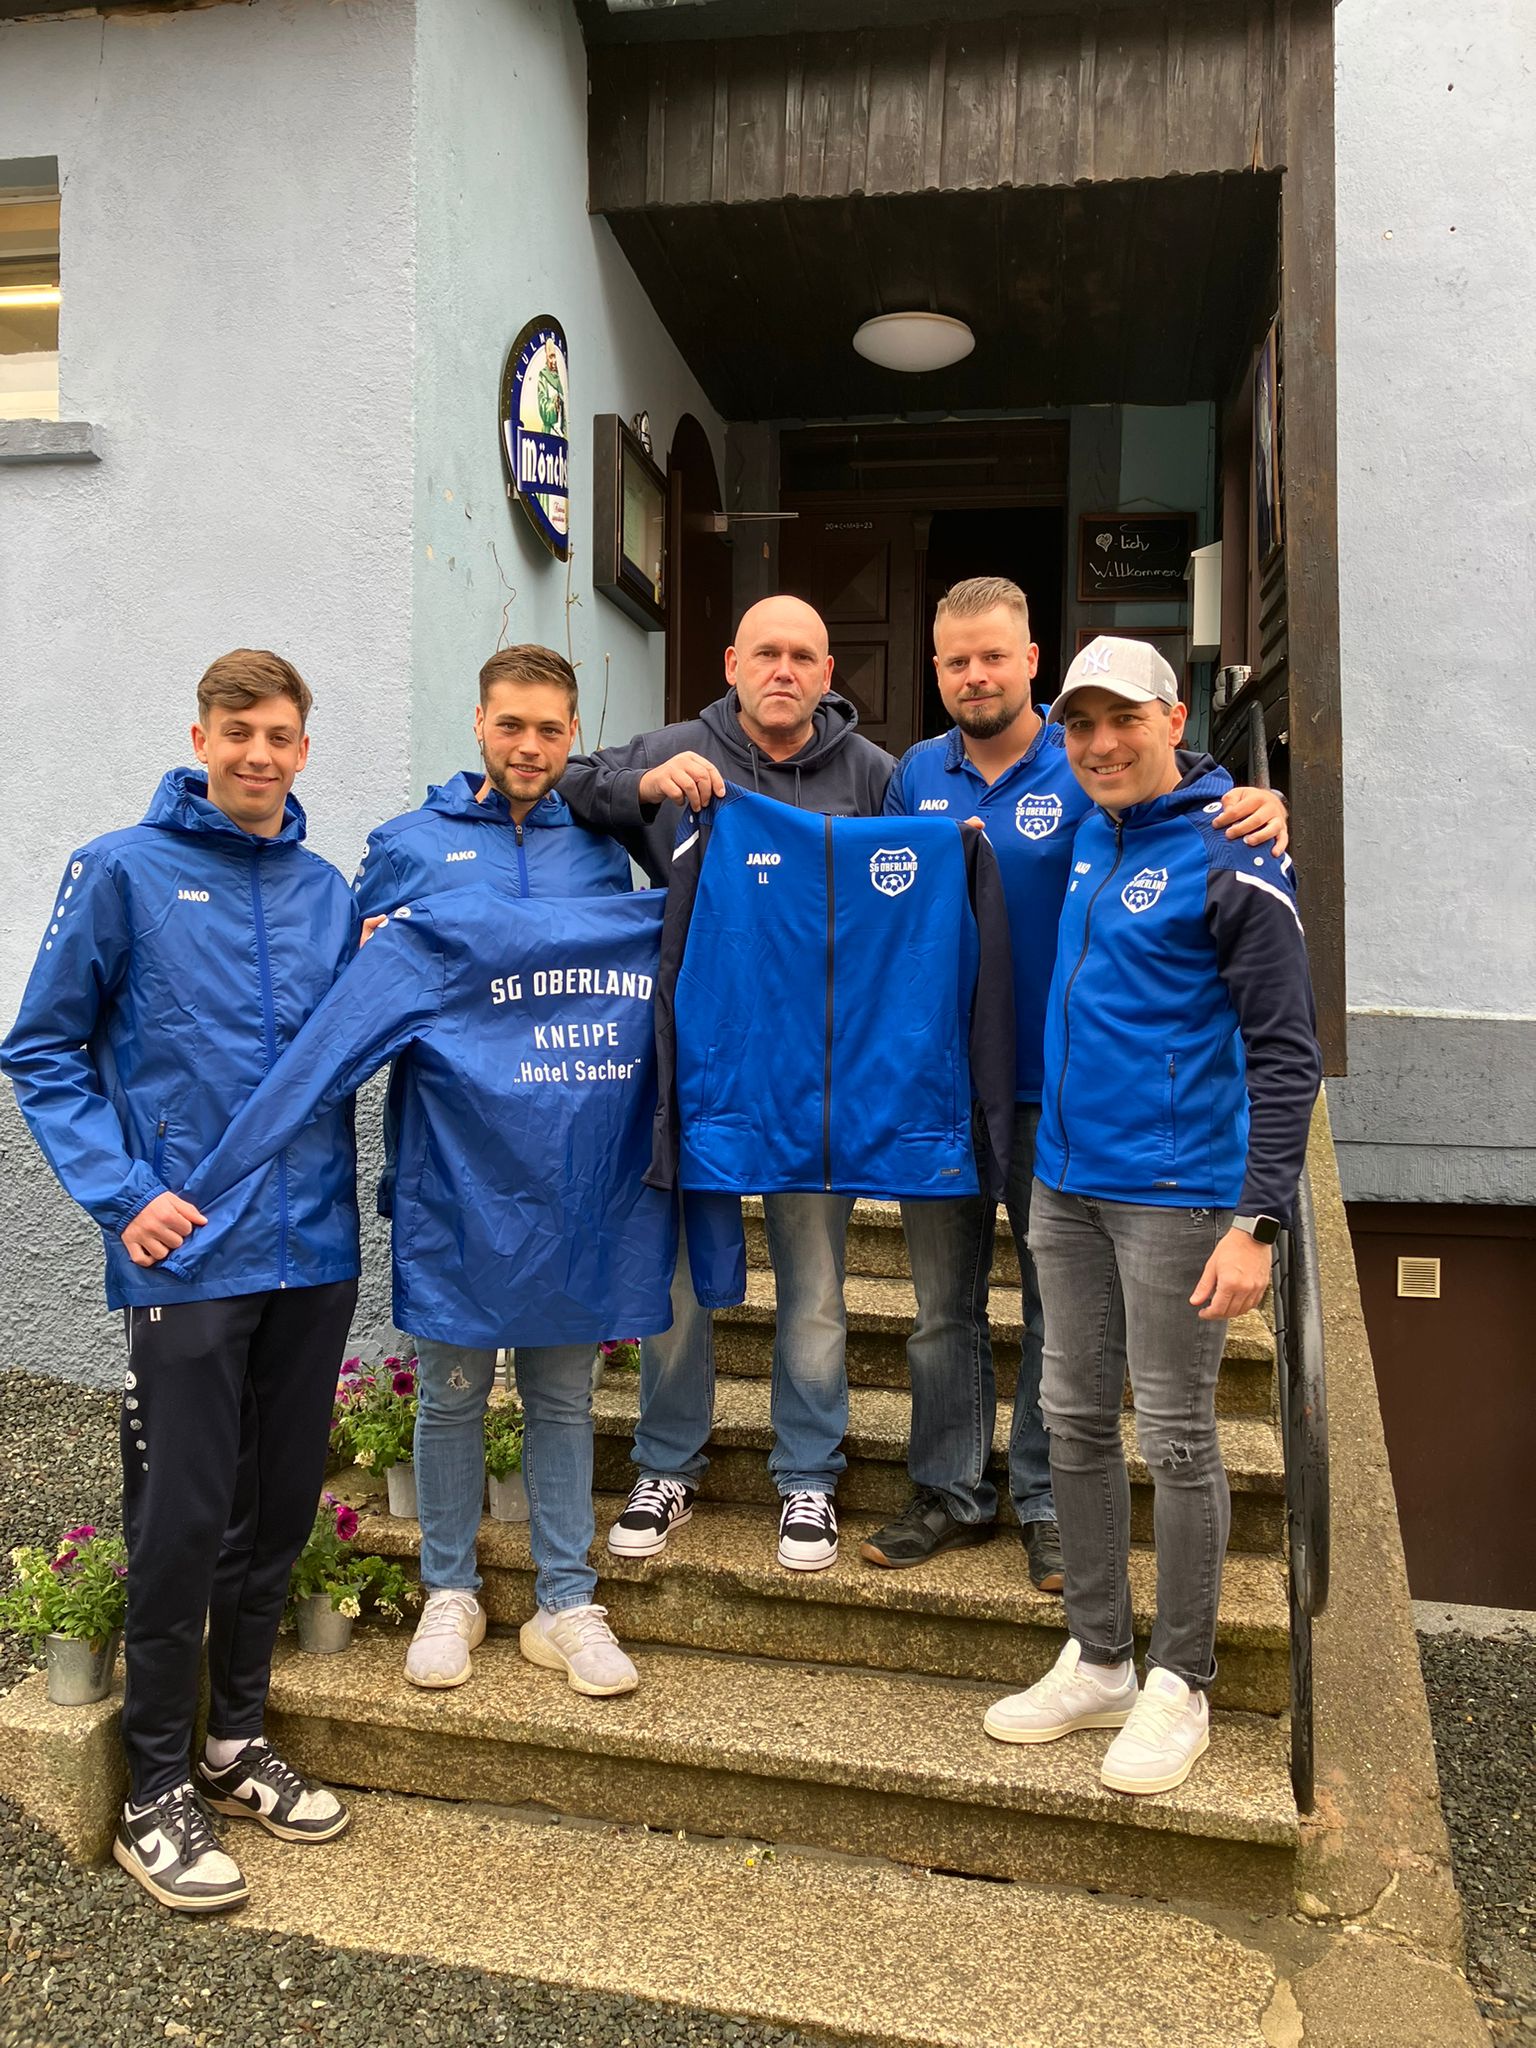 Mehr über den Artikel erfahren Lothar Leithner von der Kneipe „Hotel Sacher“ unterstützt  erneut die Fußballer der SG Oberland